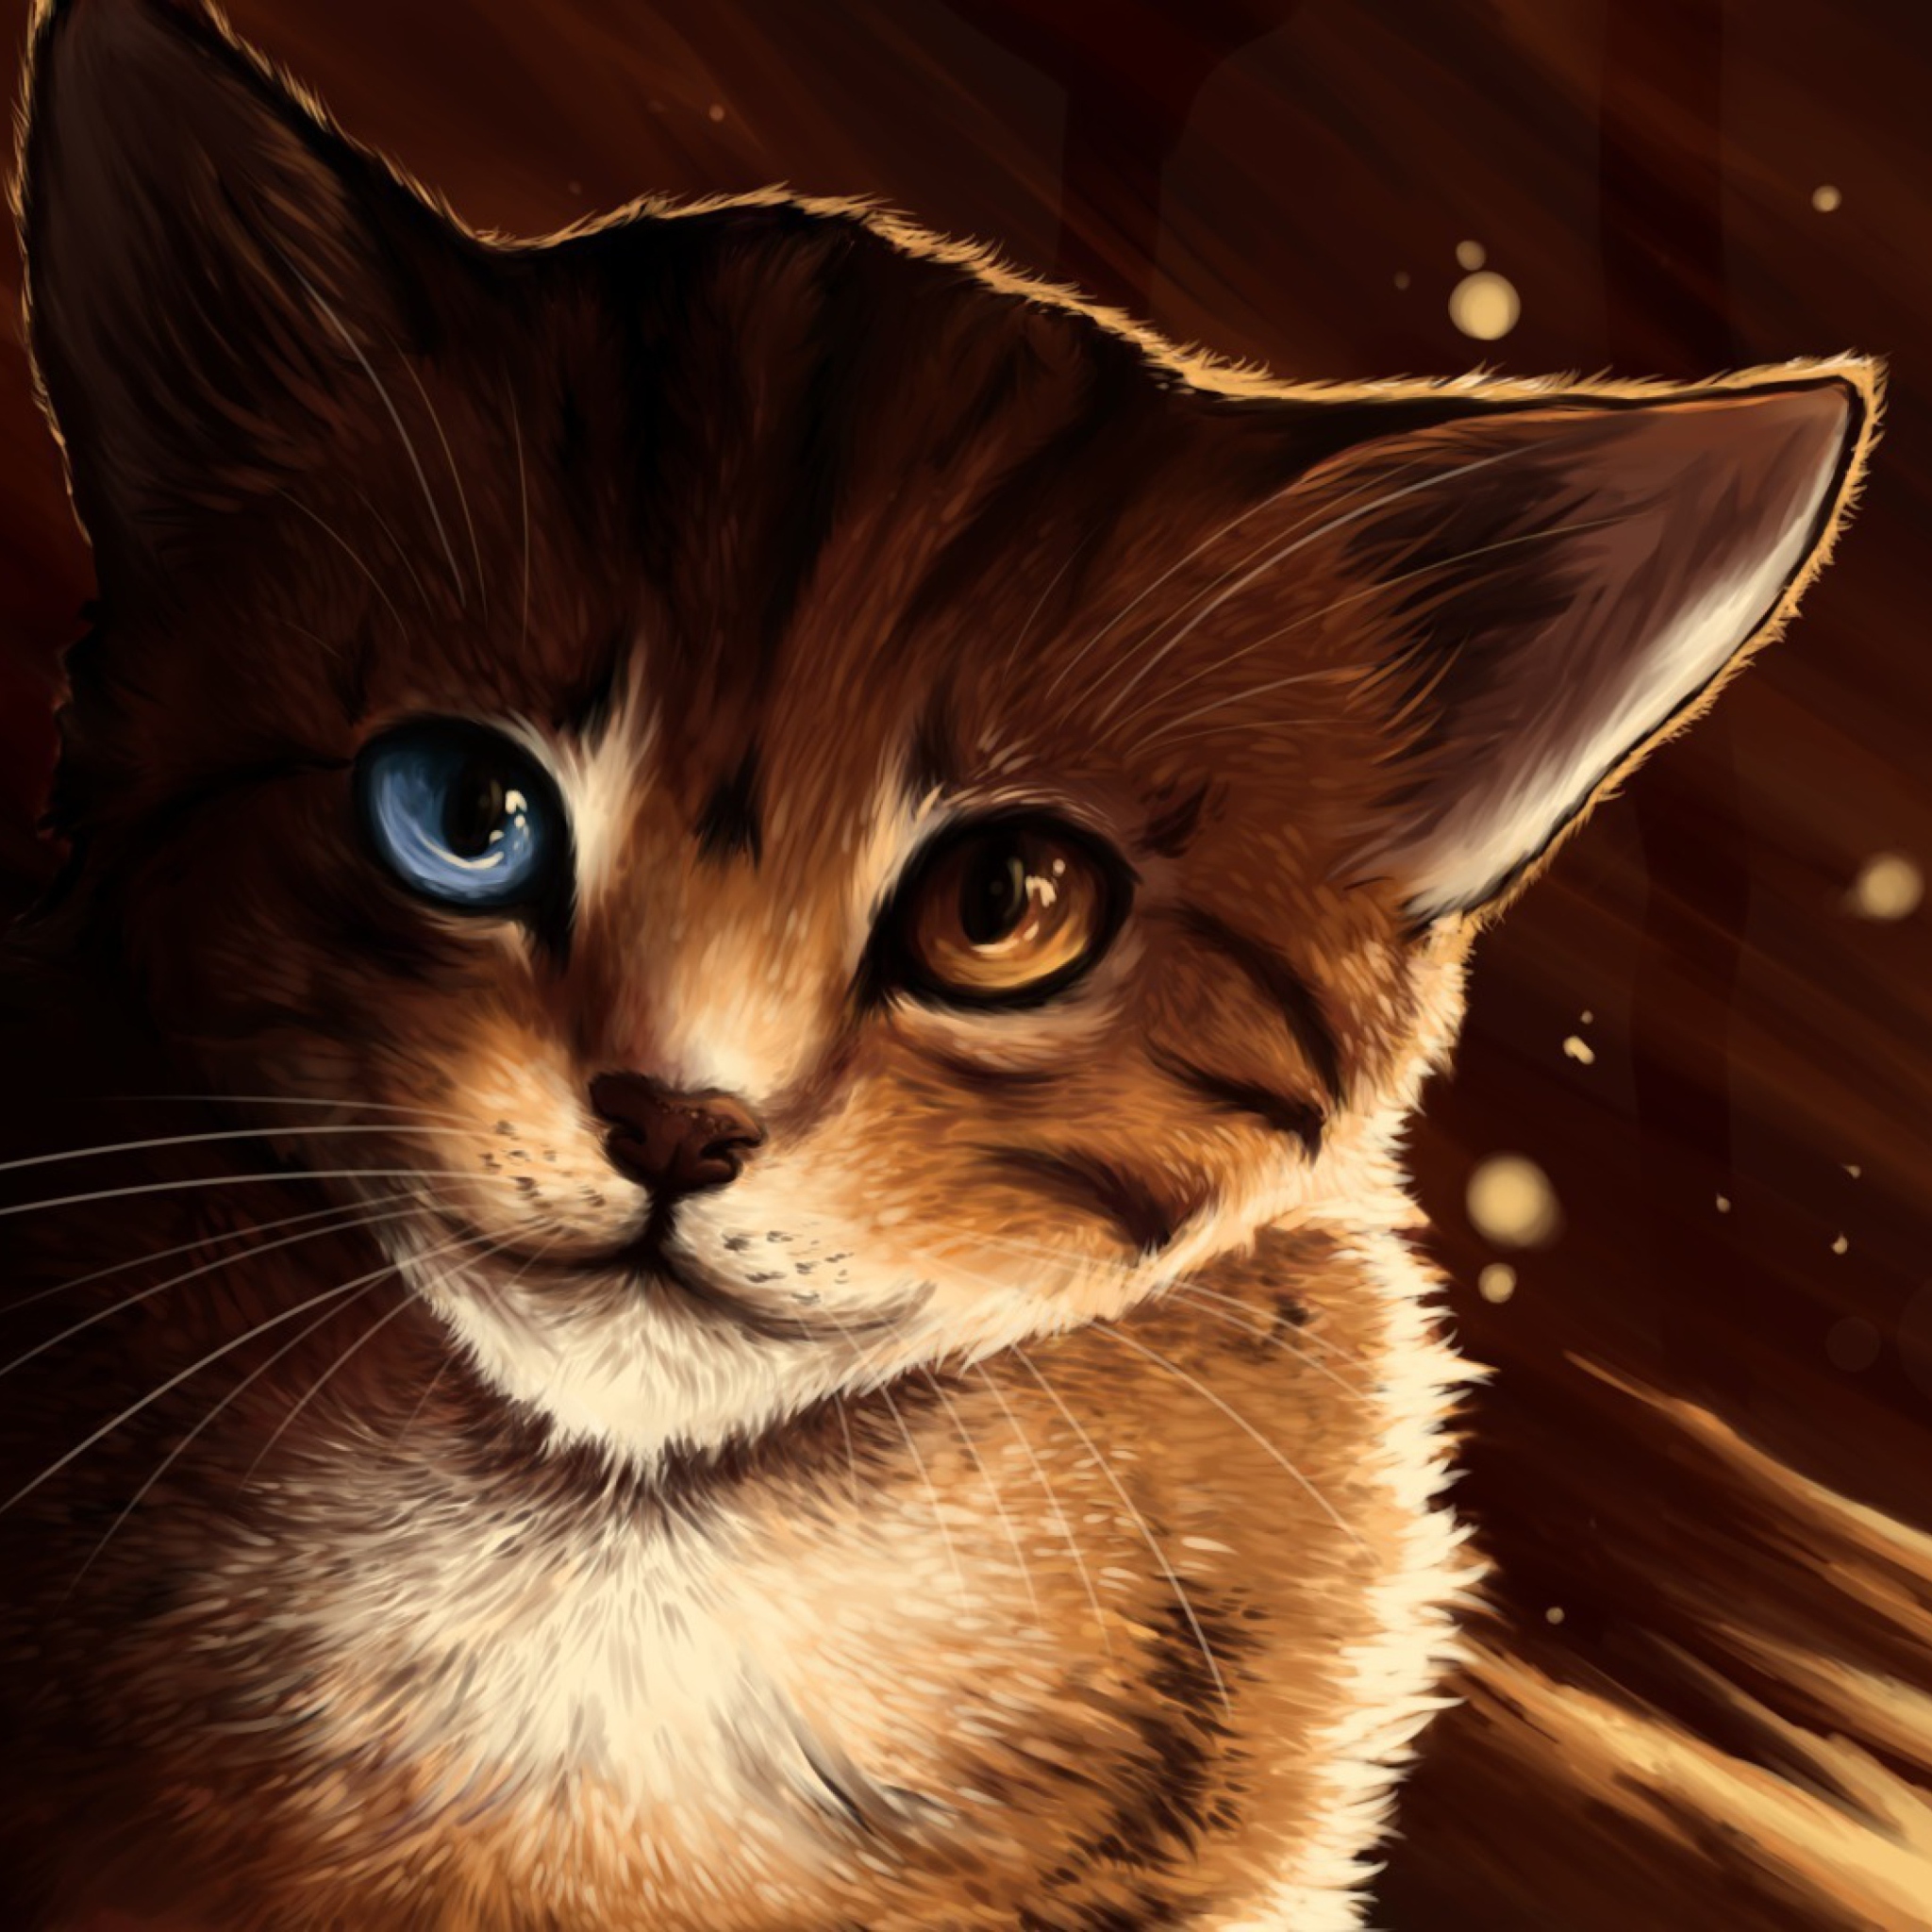 Drawn Cat screenshot #1 2048x2048